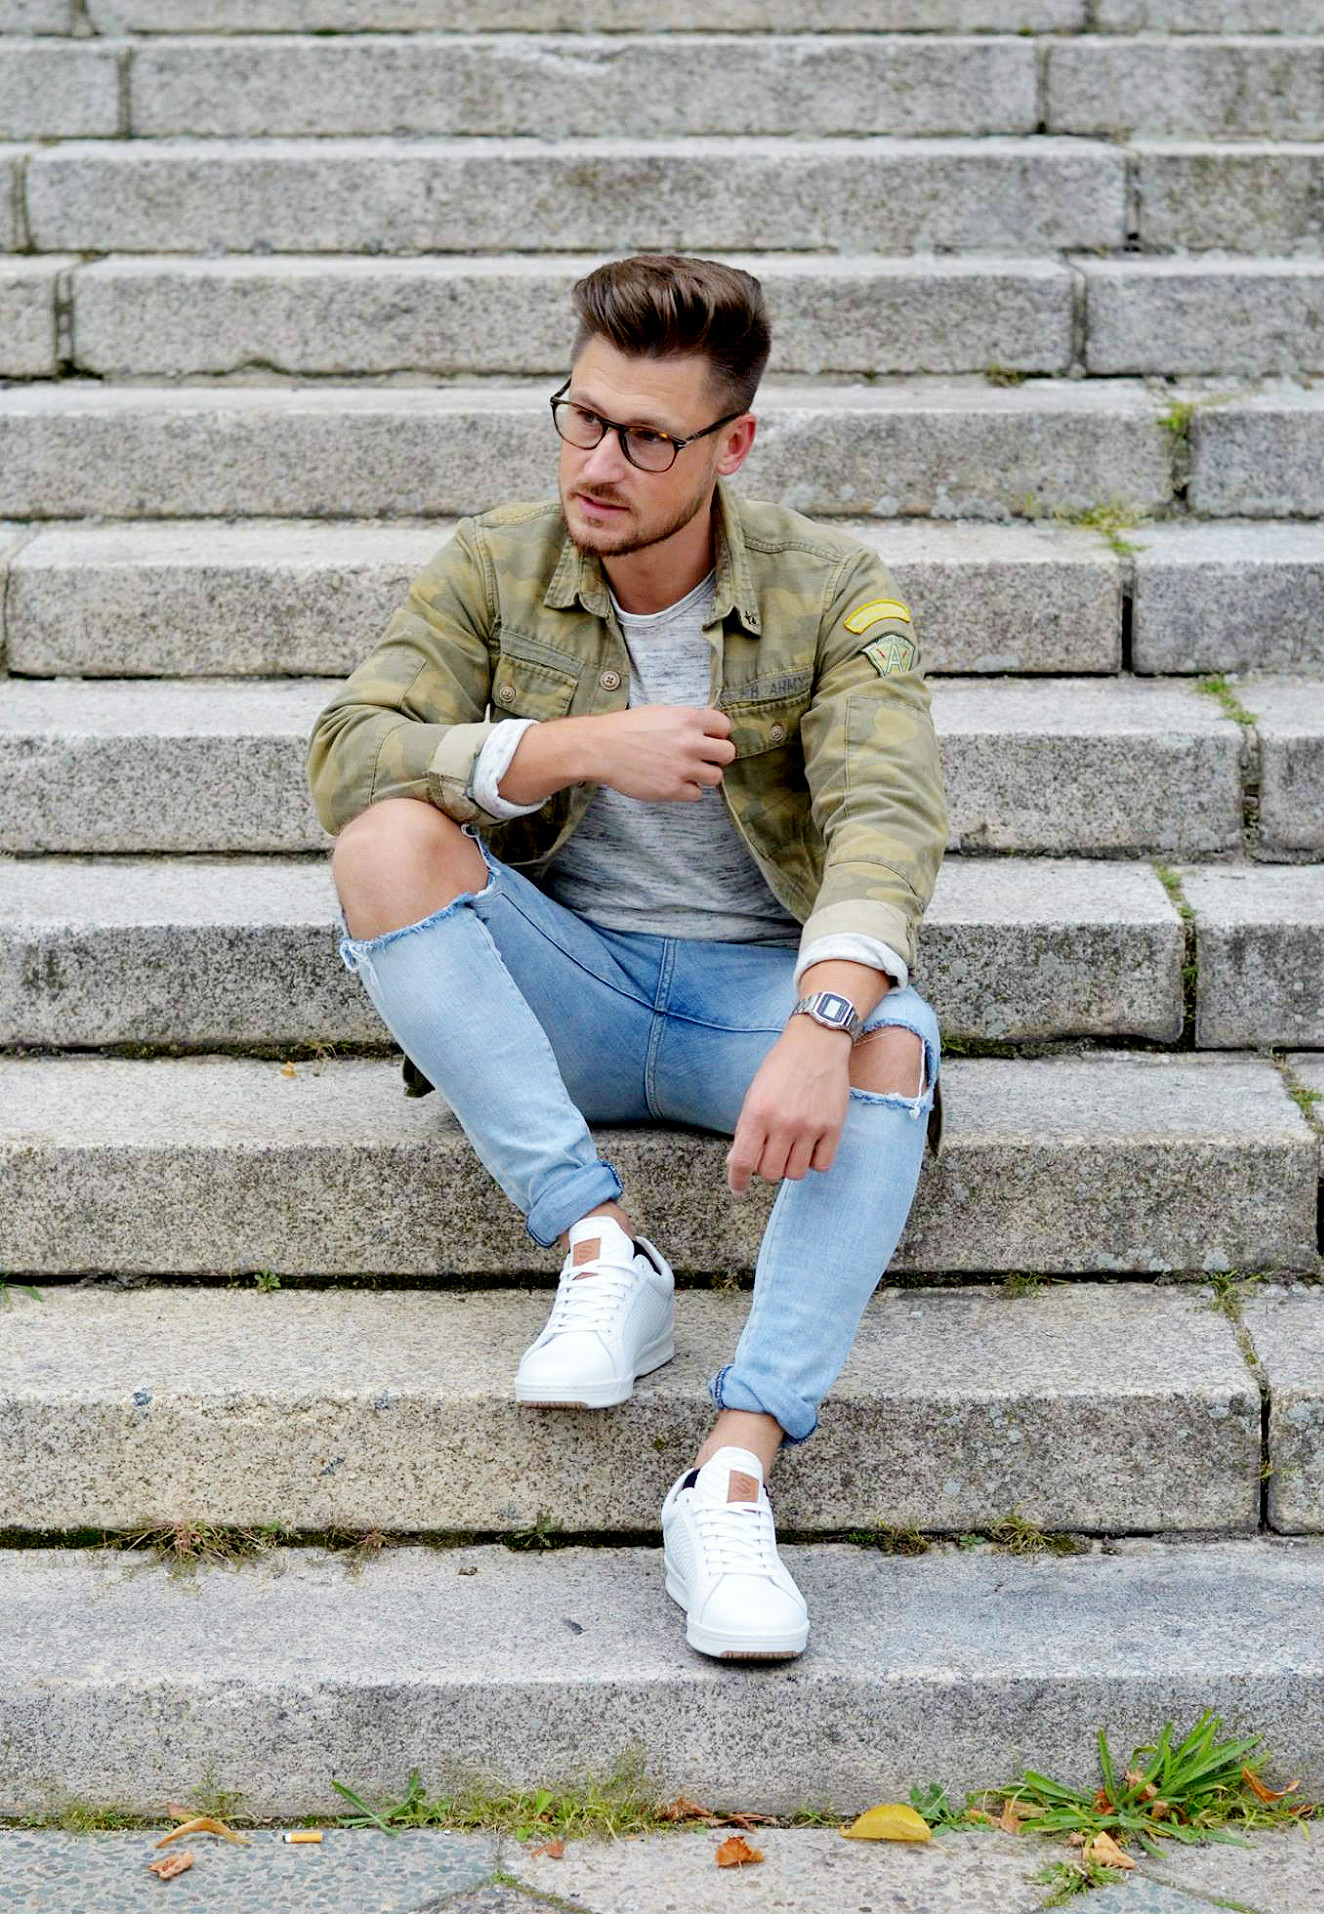 Modeblog-Berlin-Männer-Blog-Fashion-Camouflage-Jacke-Casio-Uhr-silber-Look